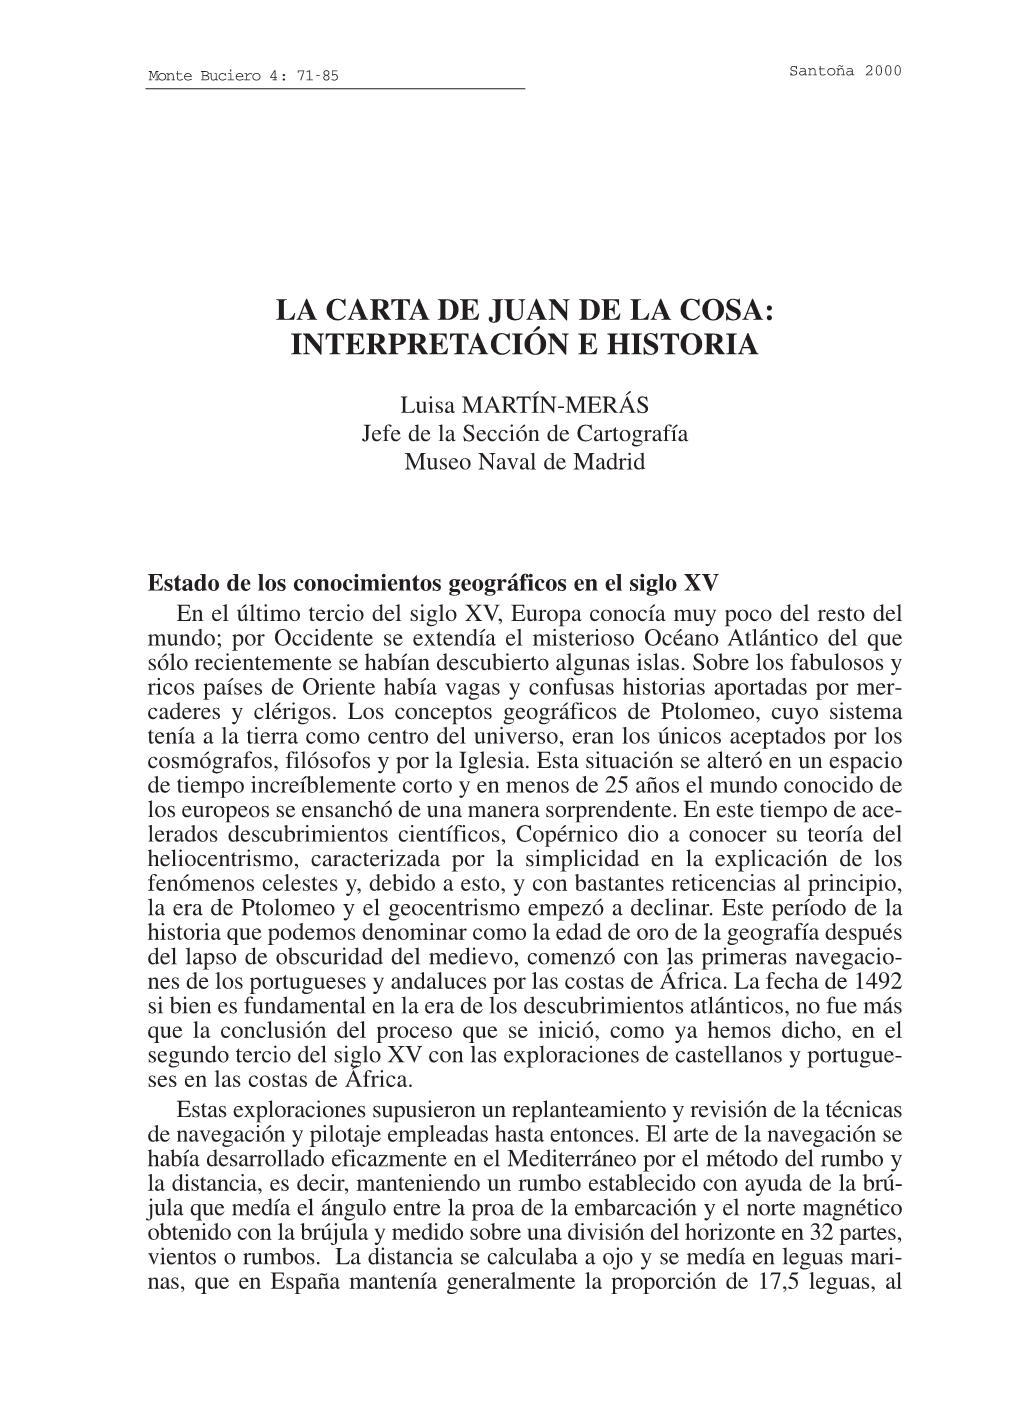 La Carta De Juan De La Cosa: Interpretación E Historia